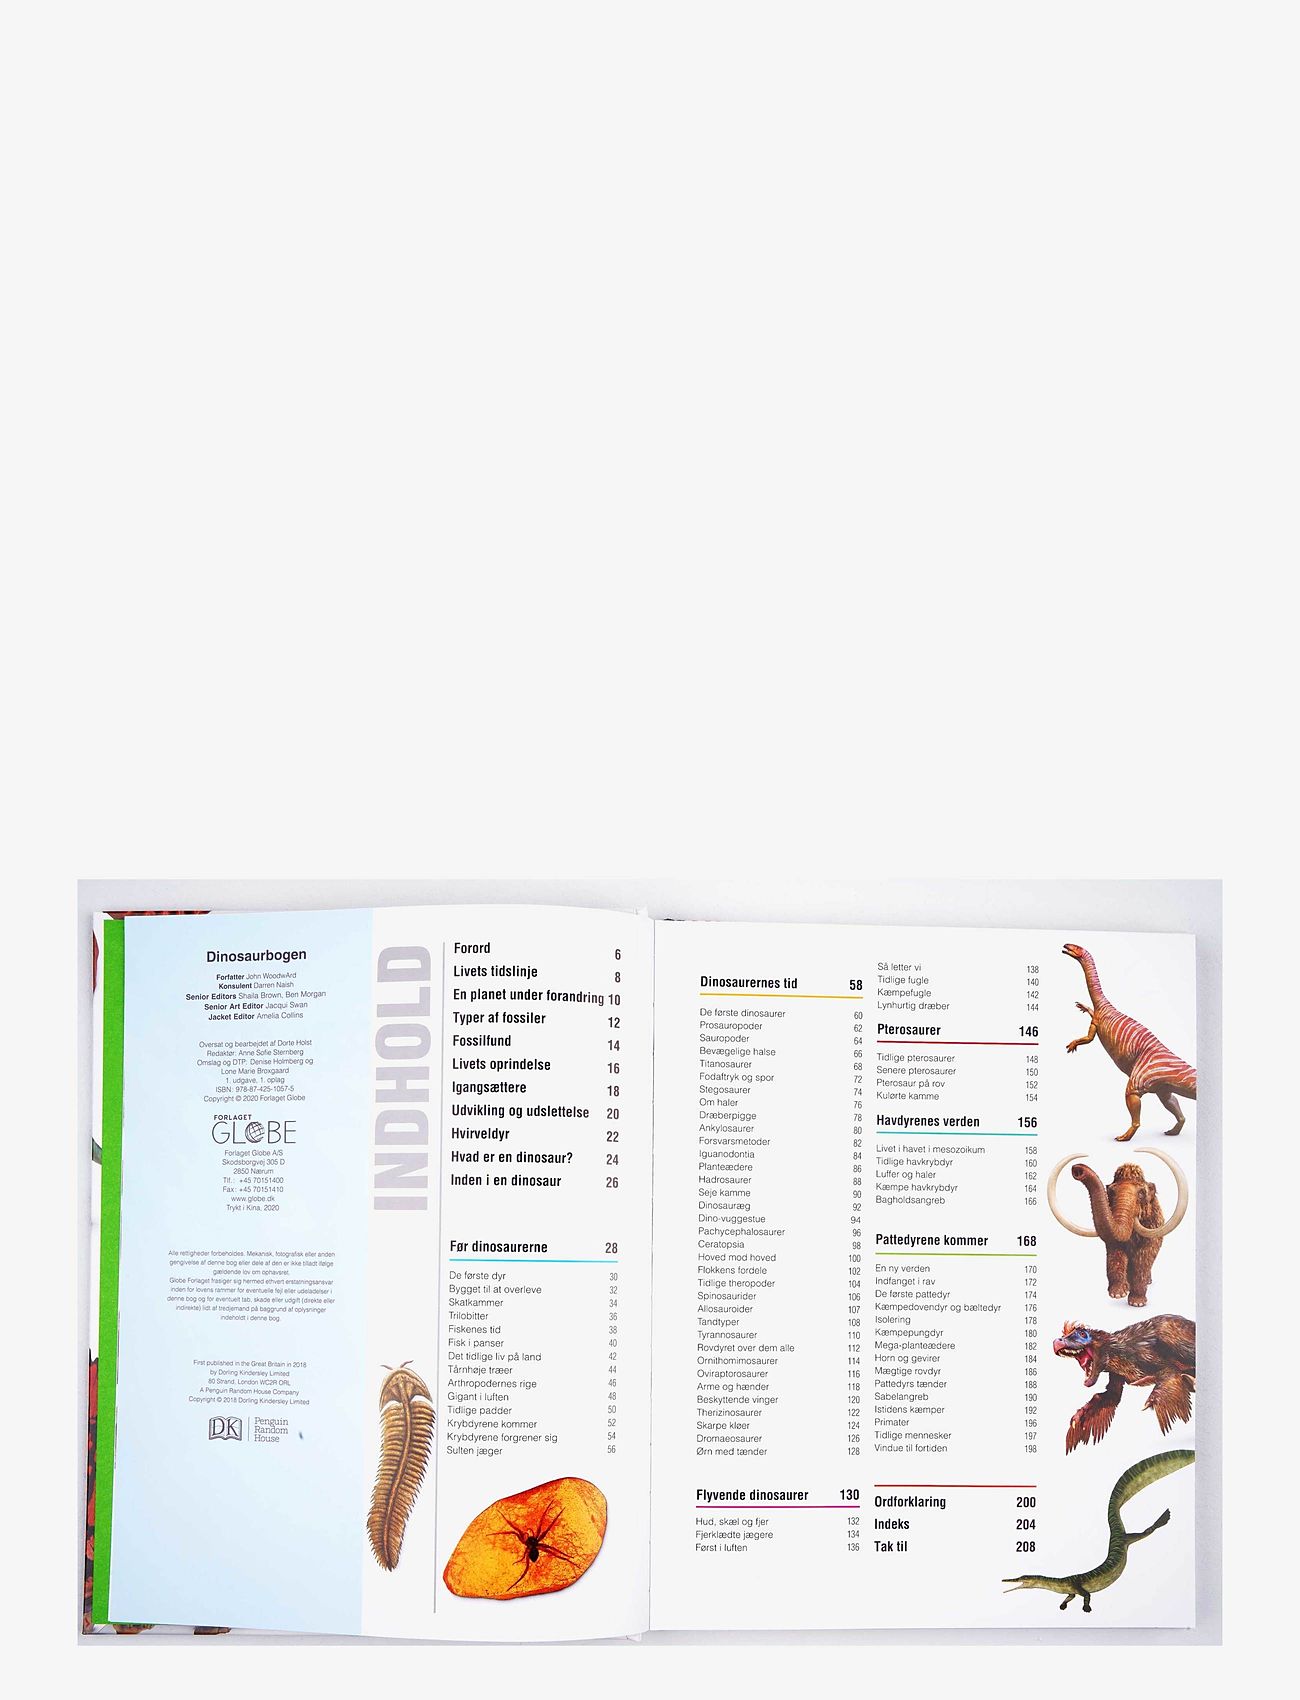 GLOBE - Dinosaurbogen - lowest prices - children's book - 1